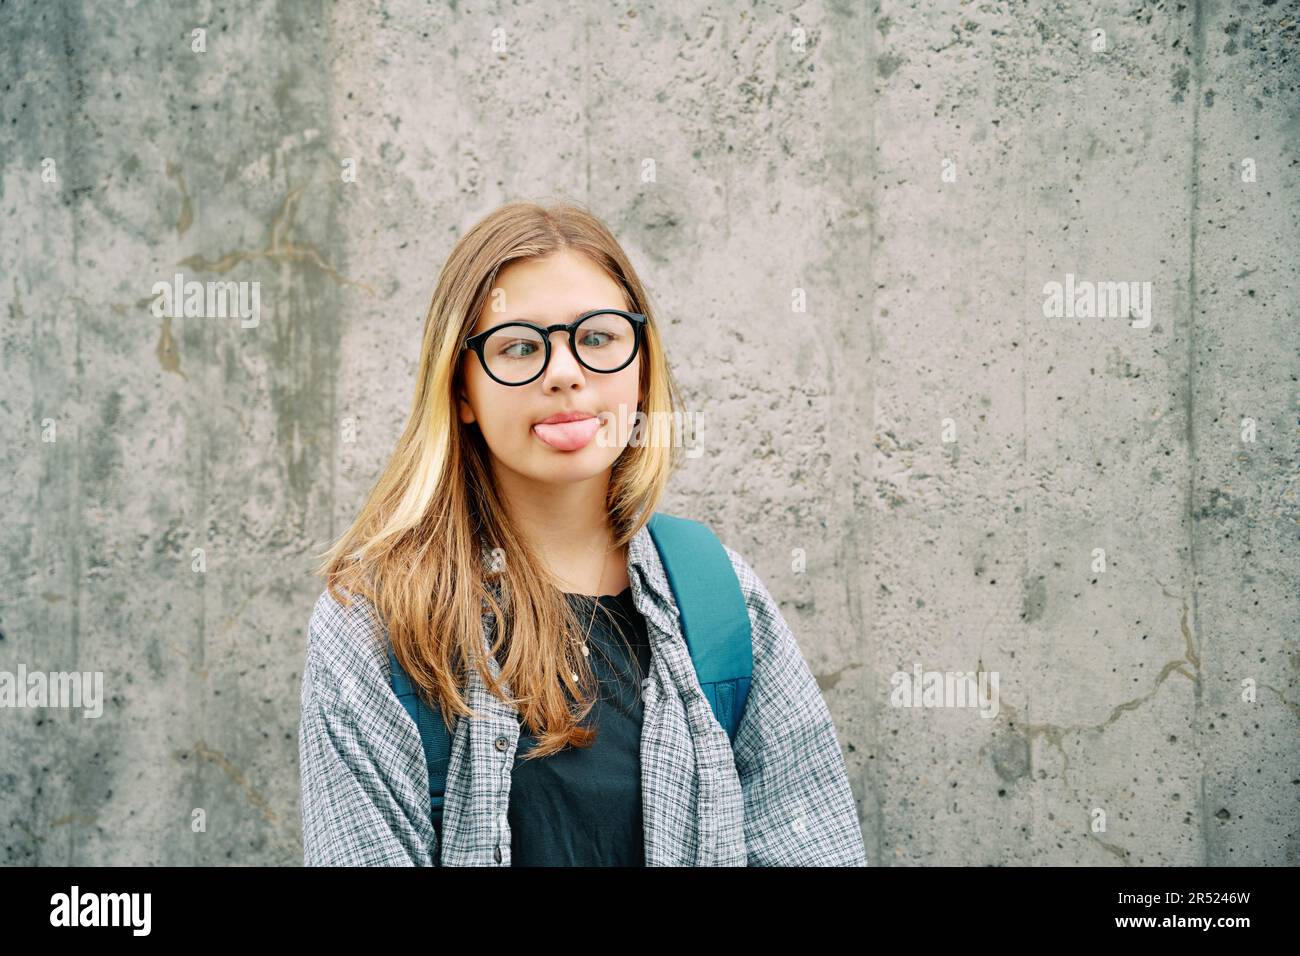 Ritratto all'aperto di una giovane ragazza ragazzina sciocca che tira la lingua, incrocia gli occhi sopra il naso, indossa occhiali e zaino, posando sulla parete grigia sul retro Foto Stock